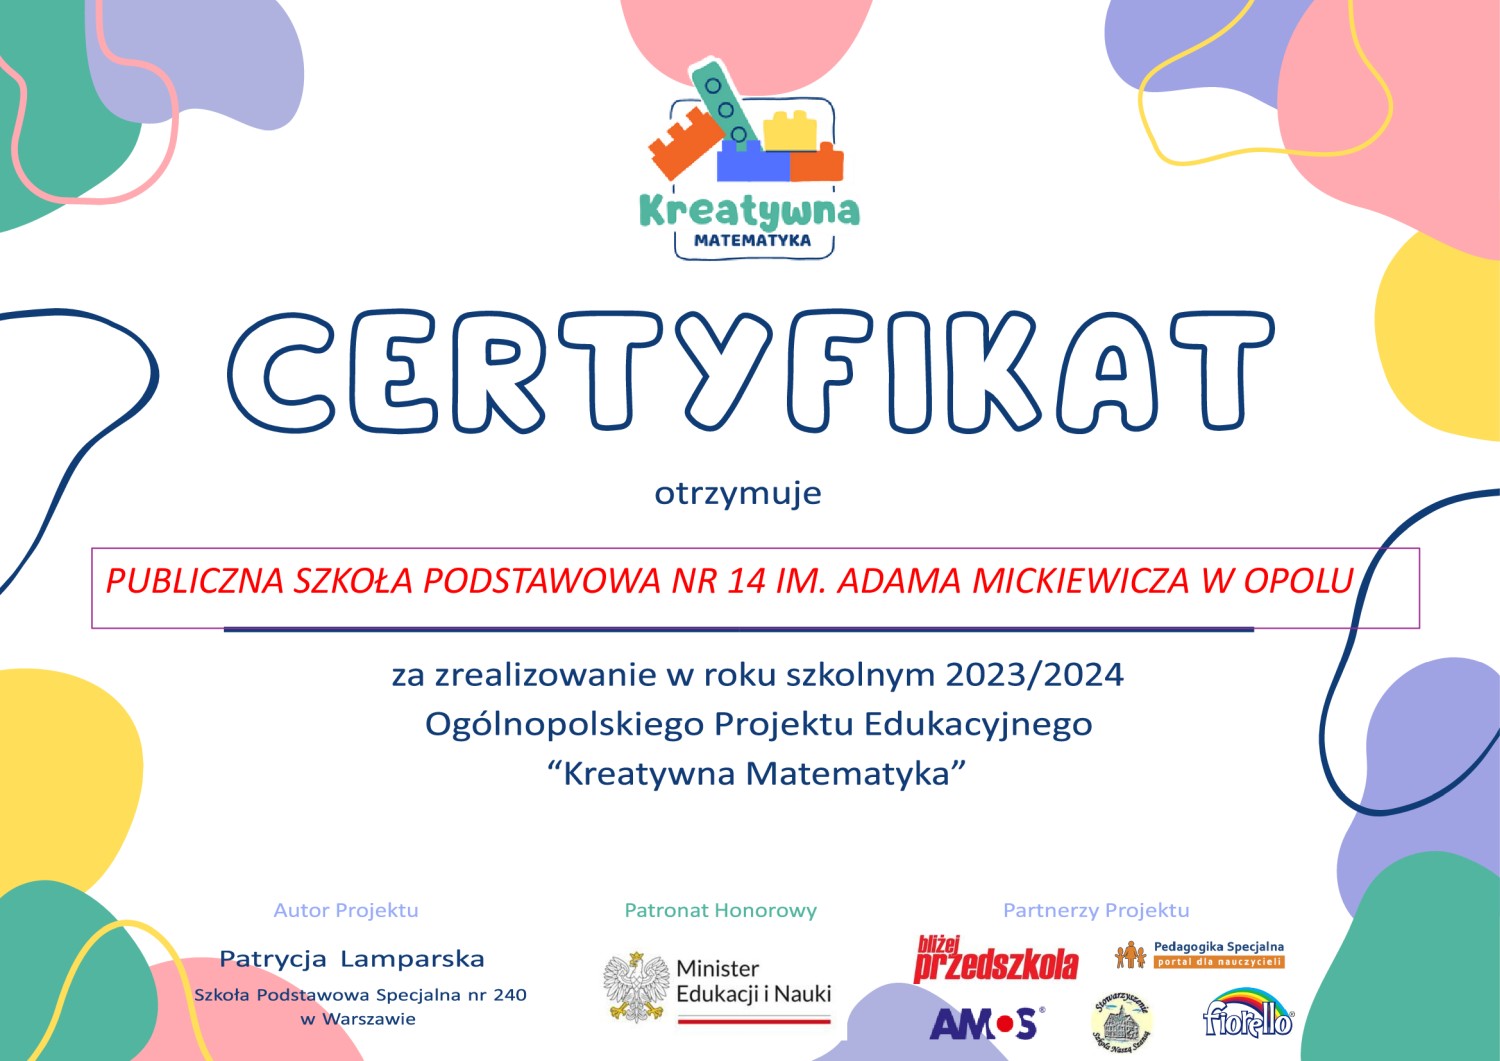 Kreatywna matematyka - certyfikat dla PSP14